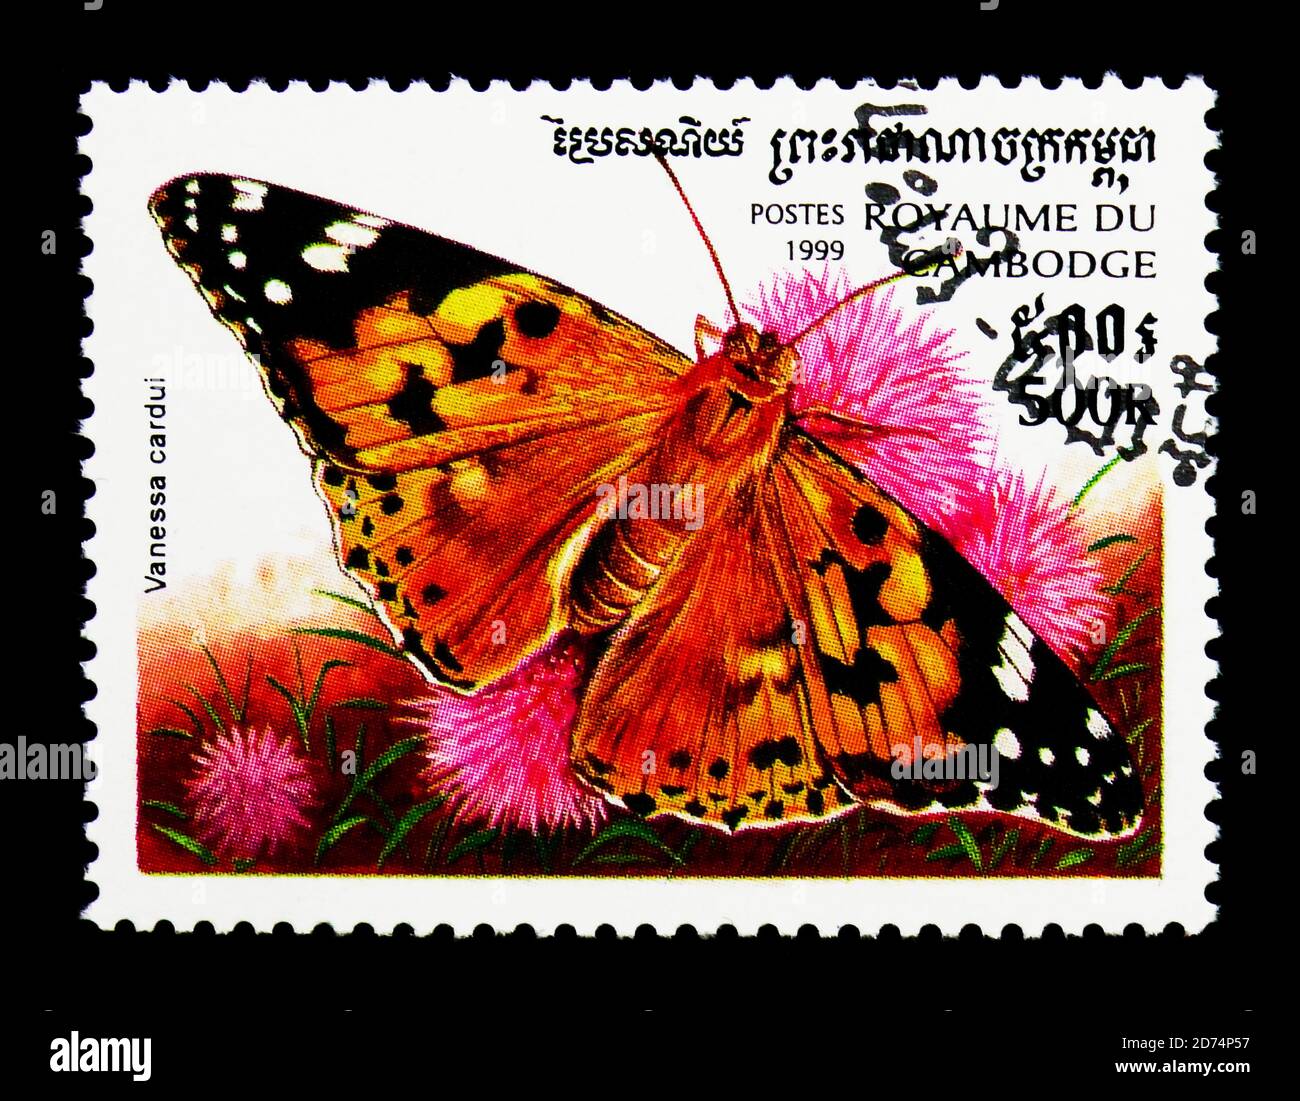 MOSCOU, RUSSIE - 24 NOVEMBRE 2017 : un timbre imprimé au Cambodge montre Painted Lady (Vanessa cardui), série Butterflies, vers 1999 Banque D'Images